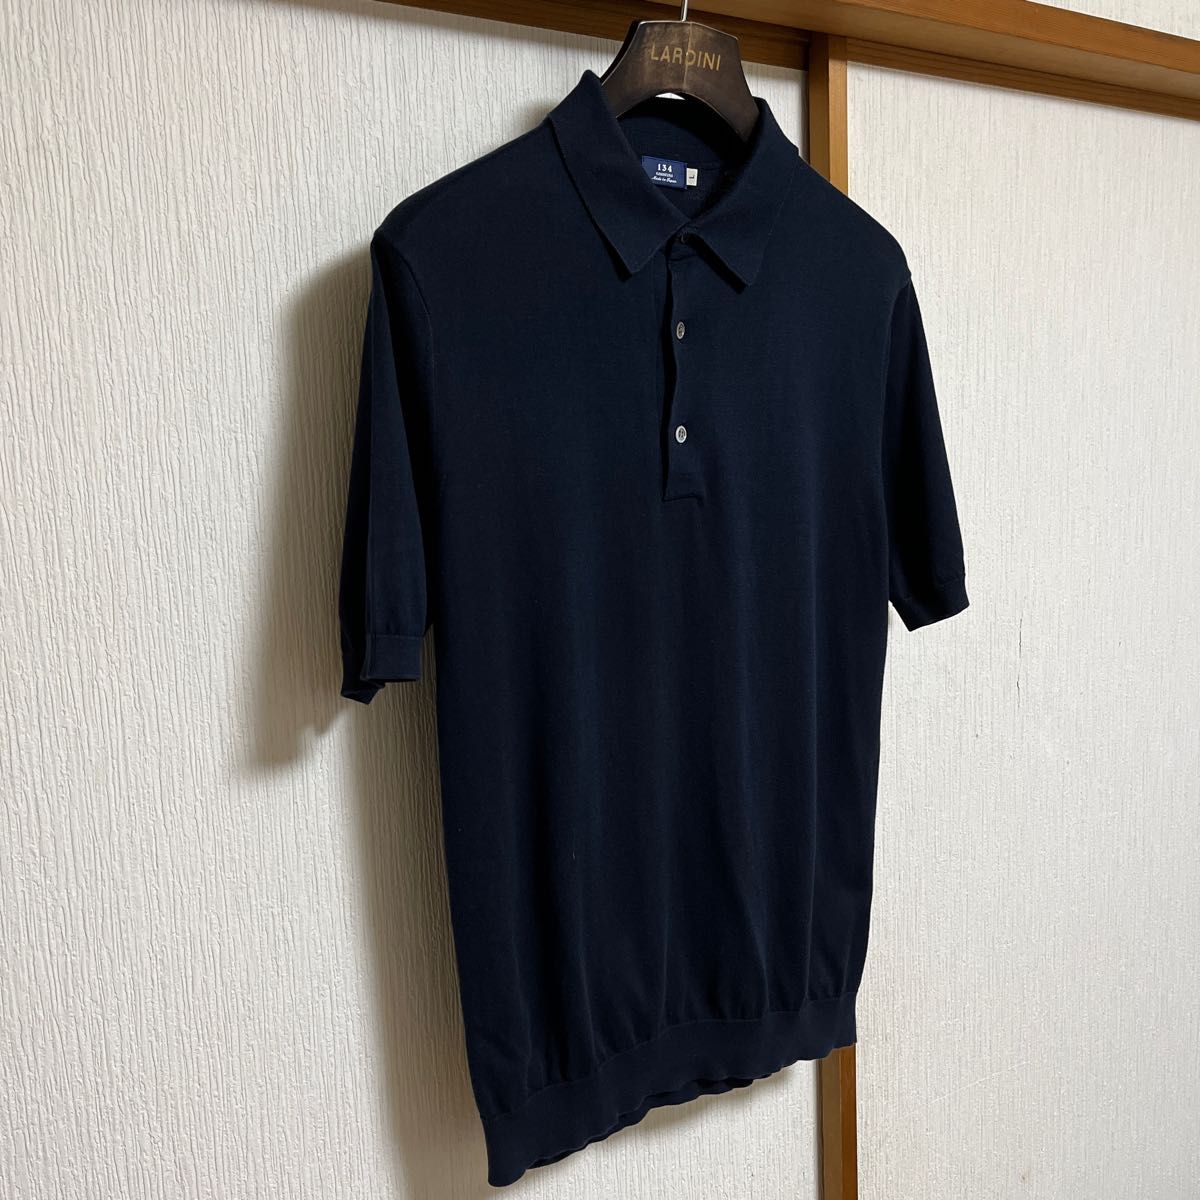 美品】Maker's Shirt鎌倉 SUVIN 30G ニットポロシャツ｜PayPayフリマ